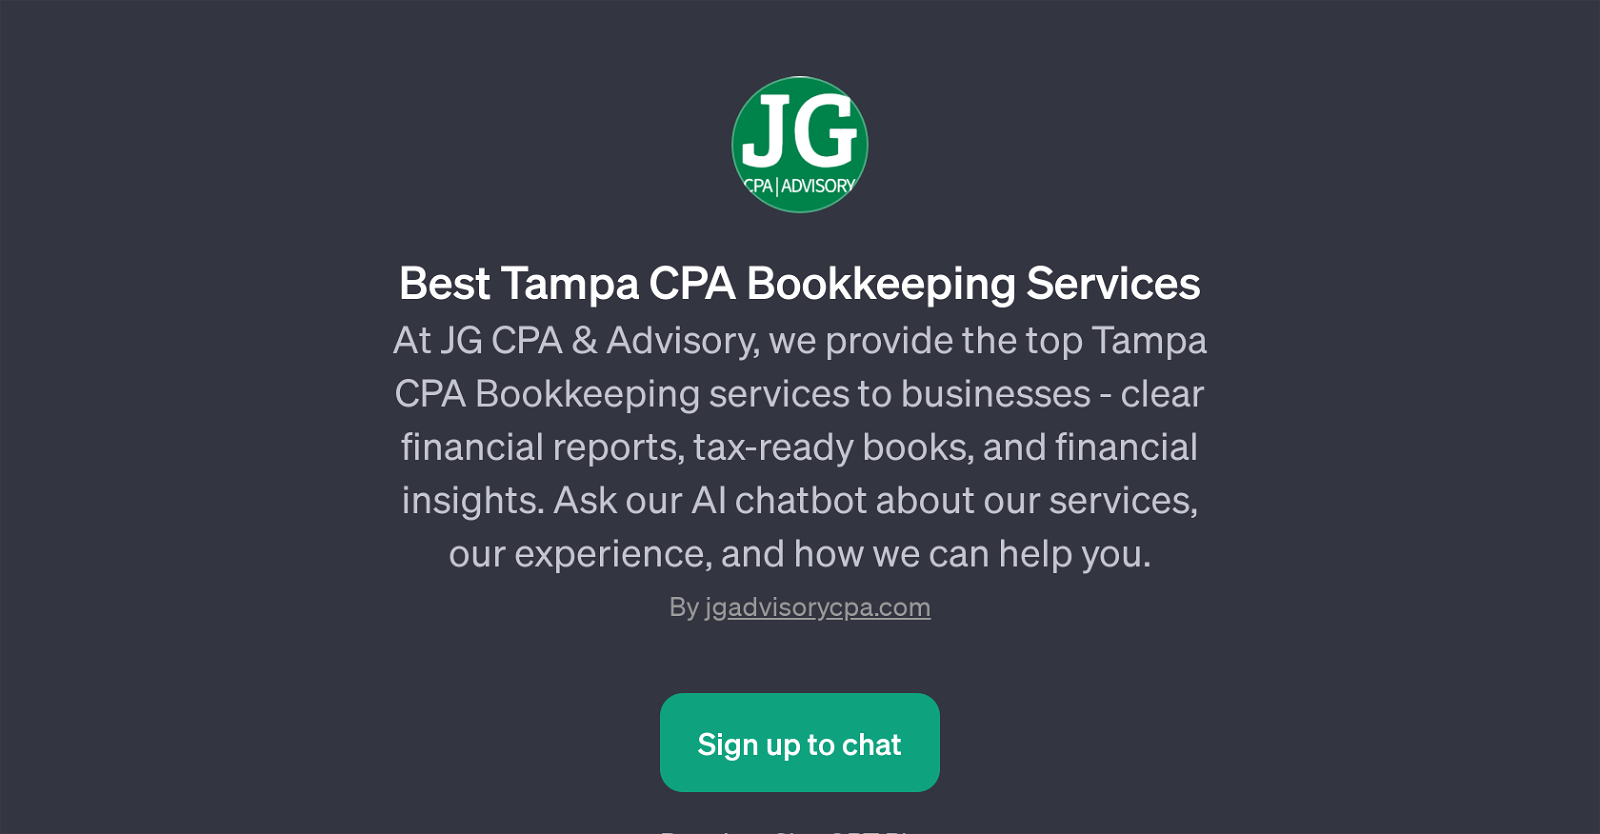 JG CPA & Advisory AI Chatbot website